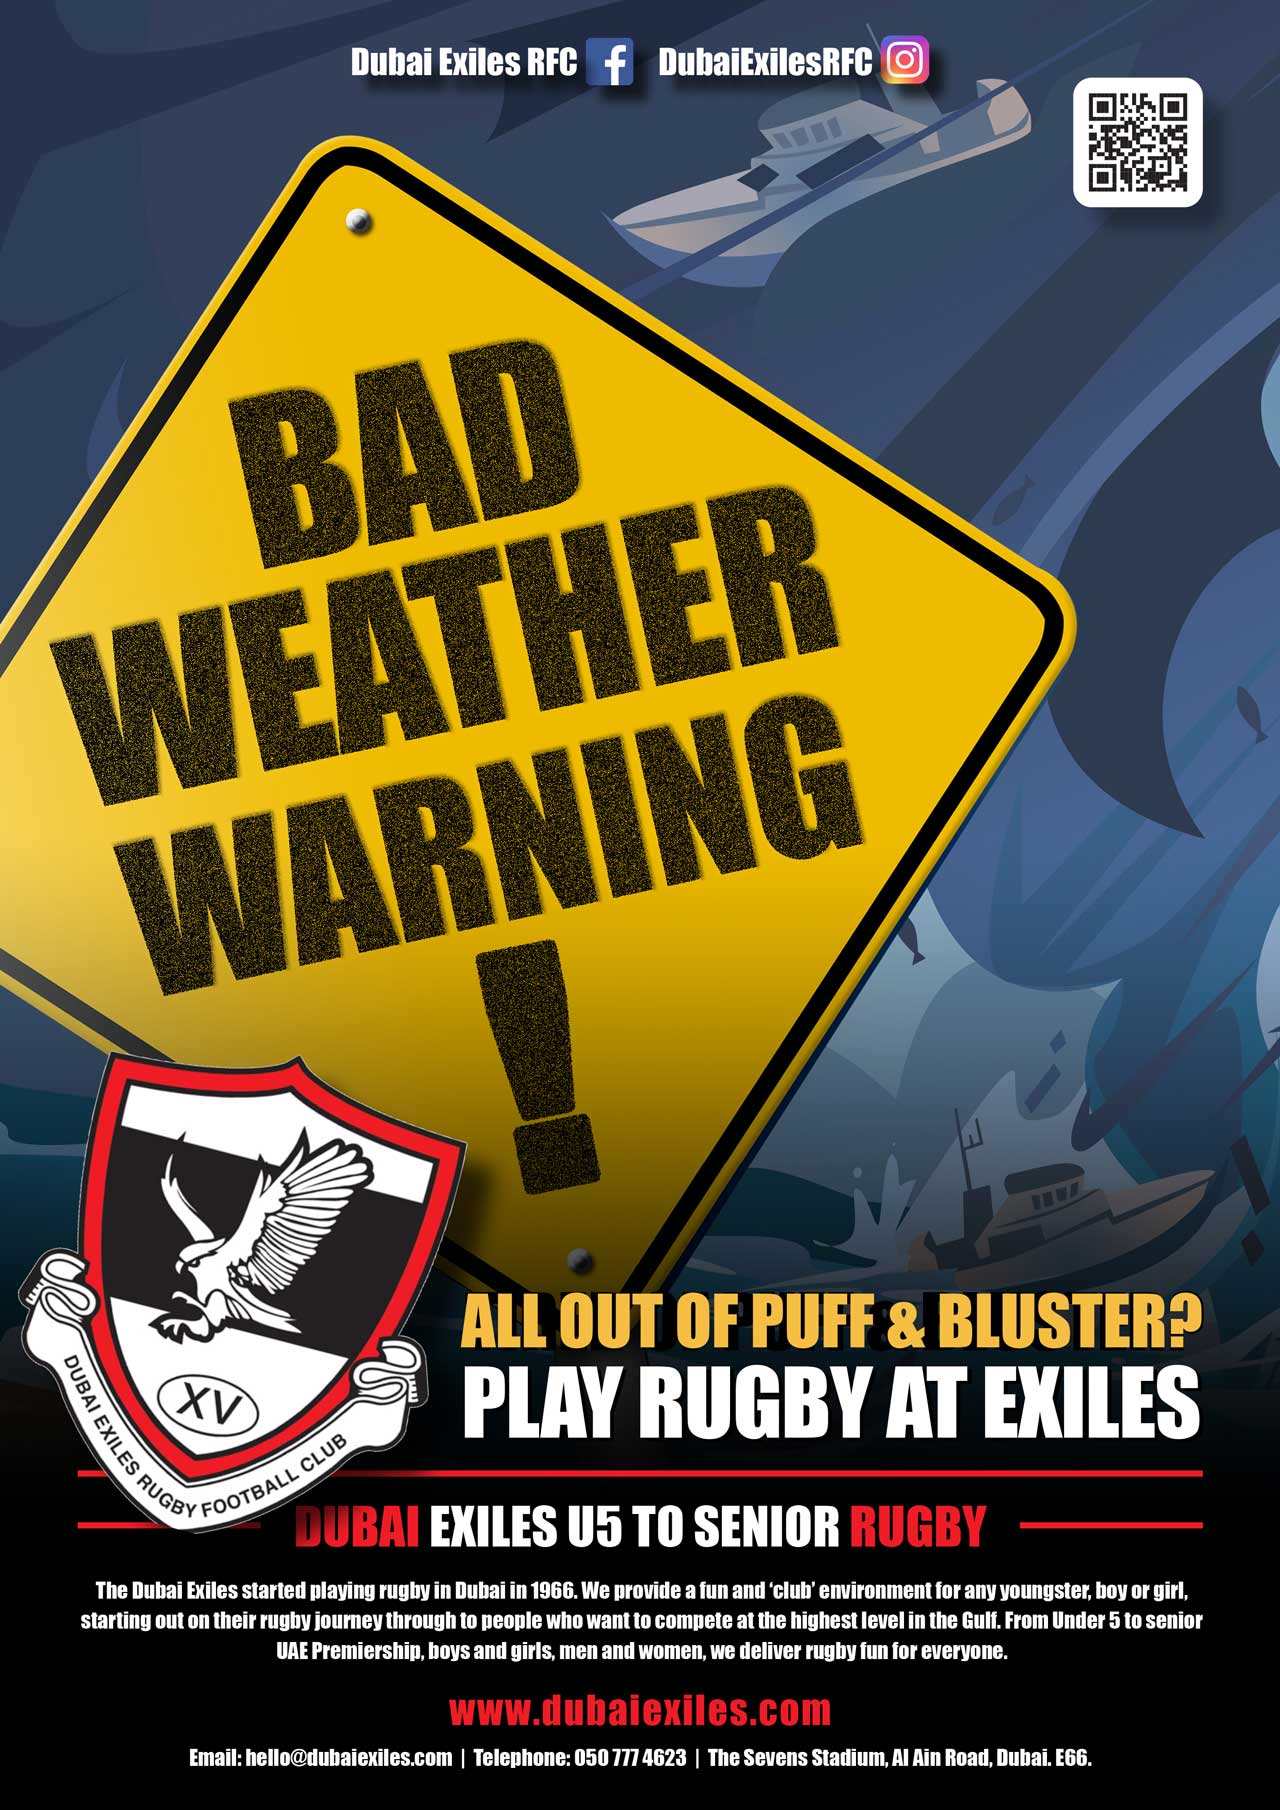 Hurricane free calm rugby in dubai